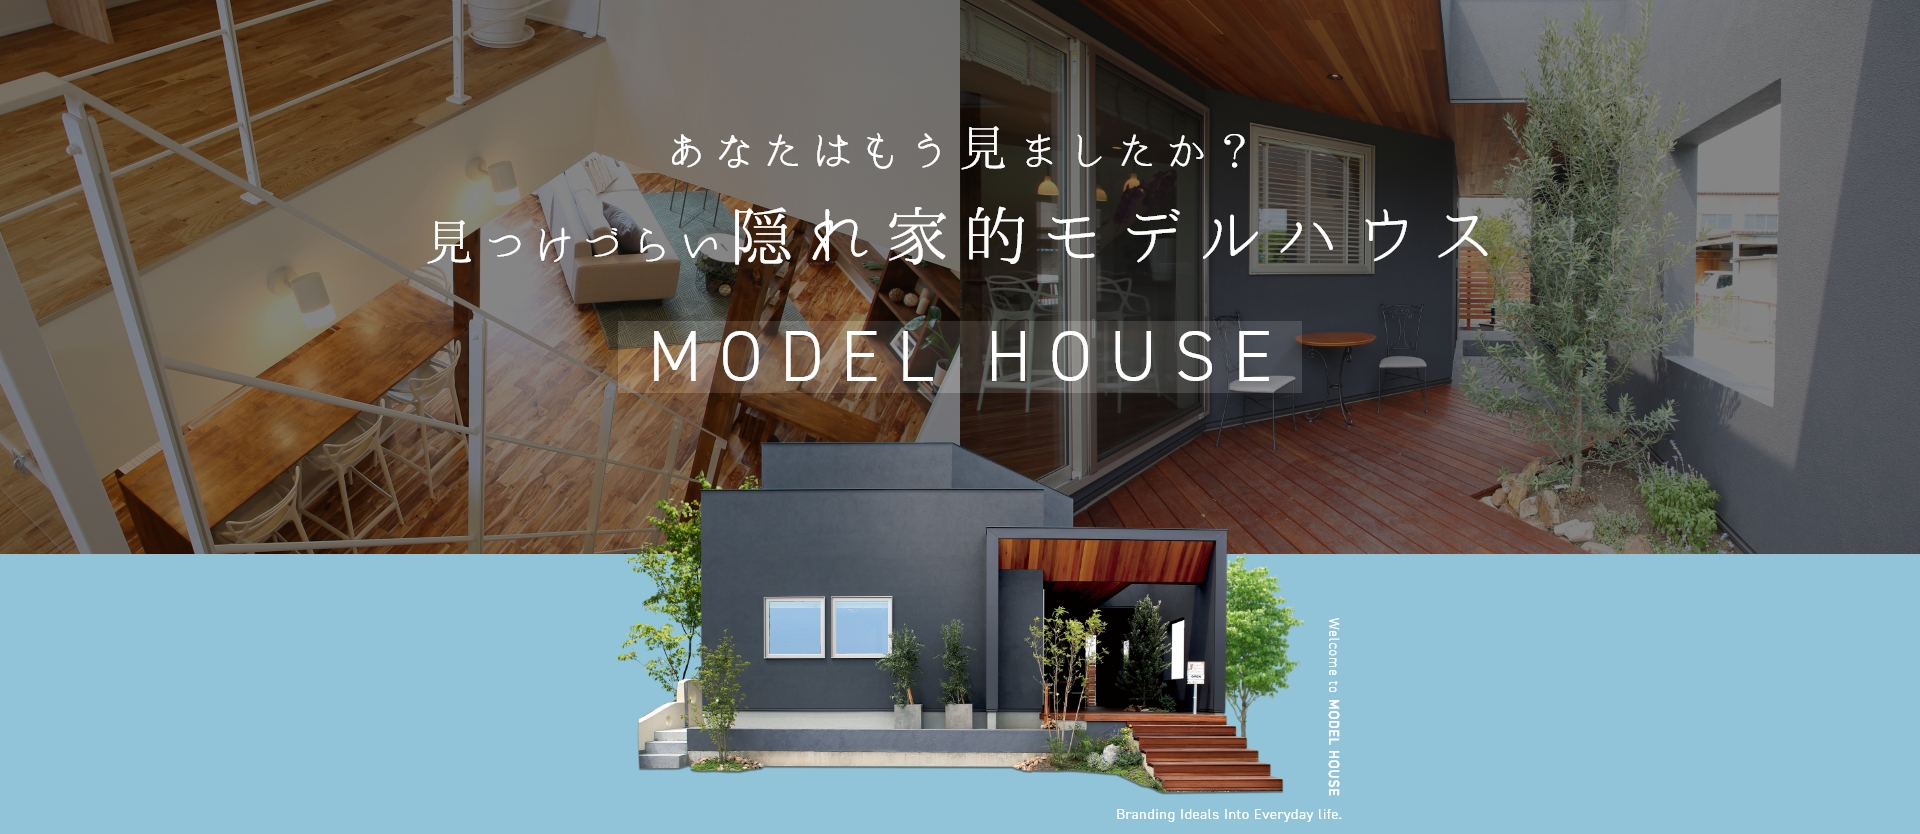 体験型モデルハウス